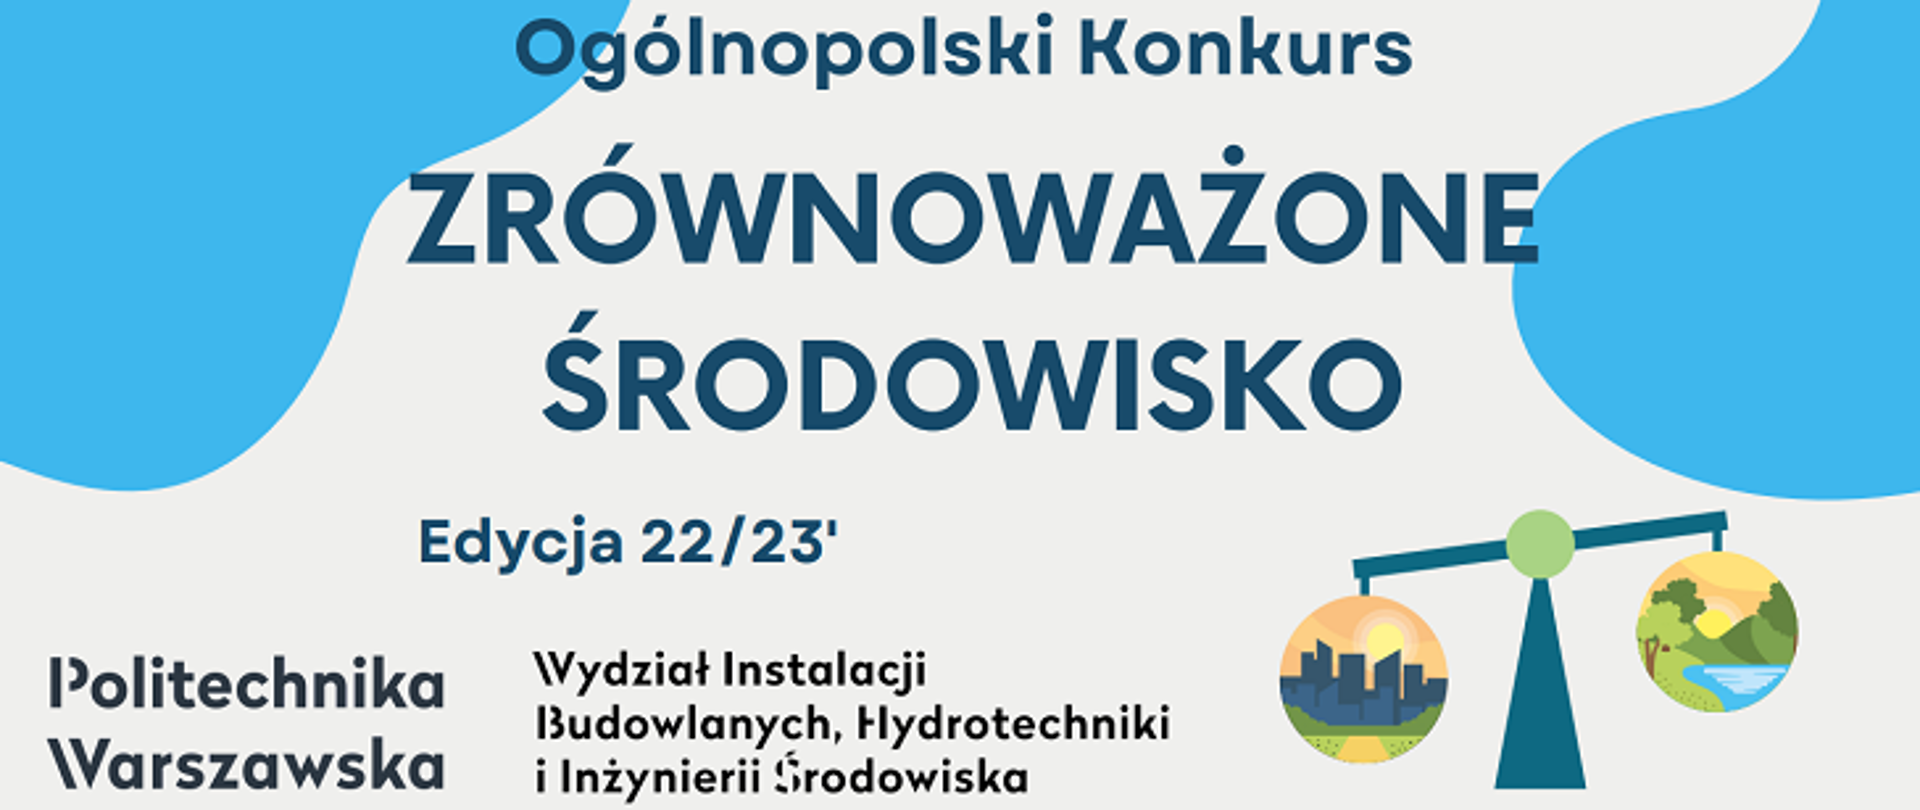 Plansza Ogólnopolskiego Konkursu